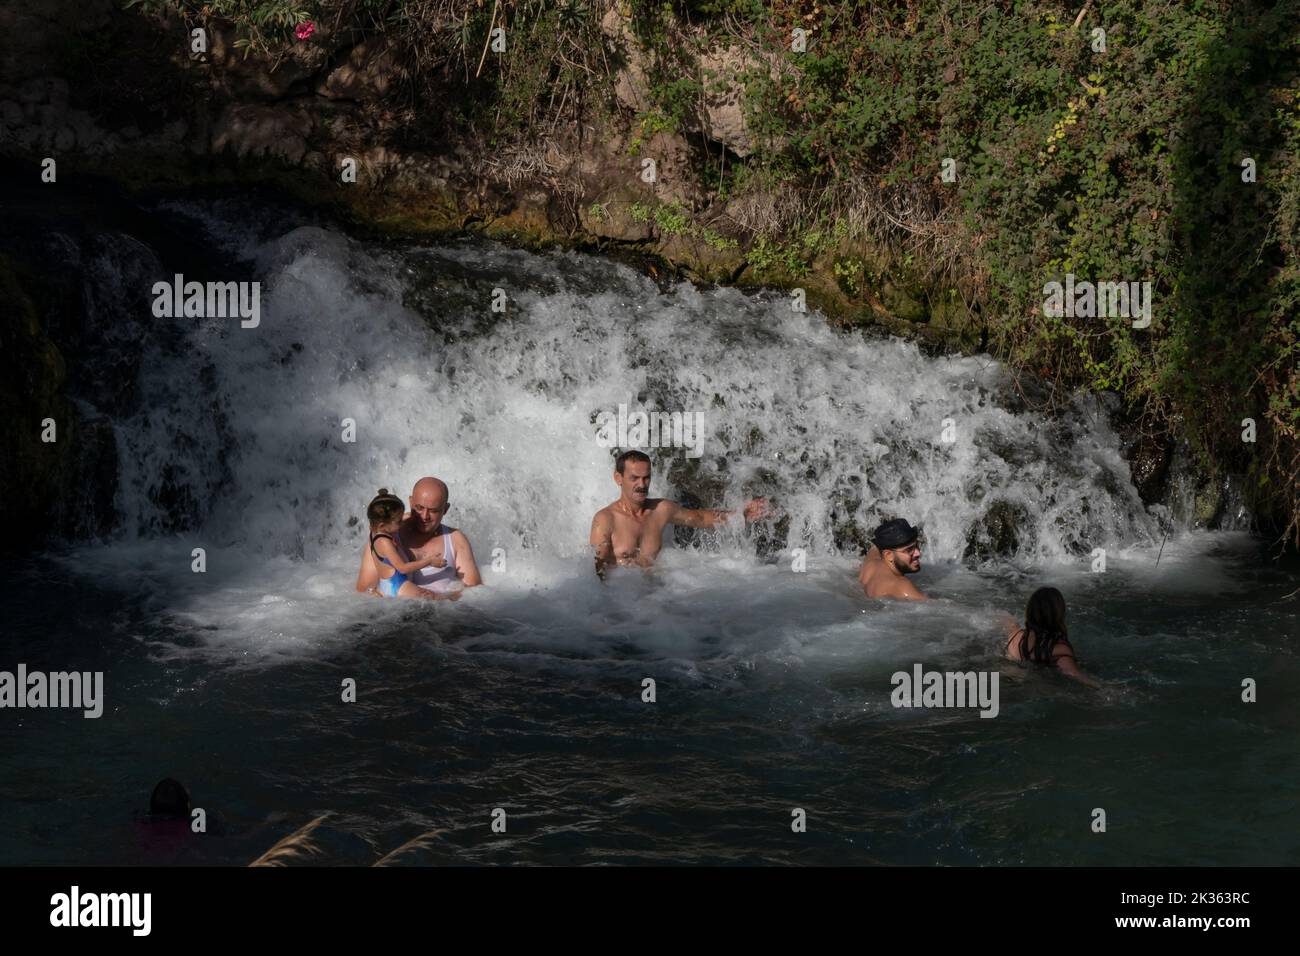 Les gens se baignent dans une petite cascade dans une piscine d'eau de source naturelle du parc national de Gan Hashlosha également connu sous son nom arabe Sakhne en Israël Banque D'Images